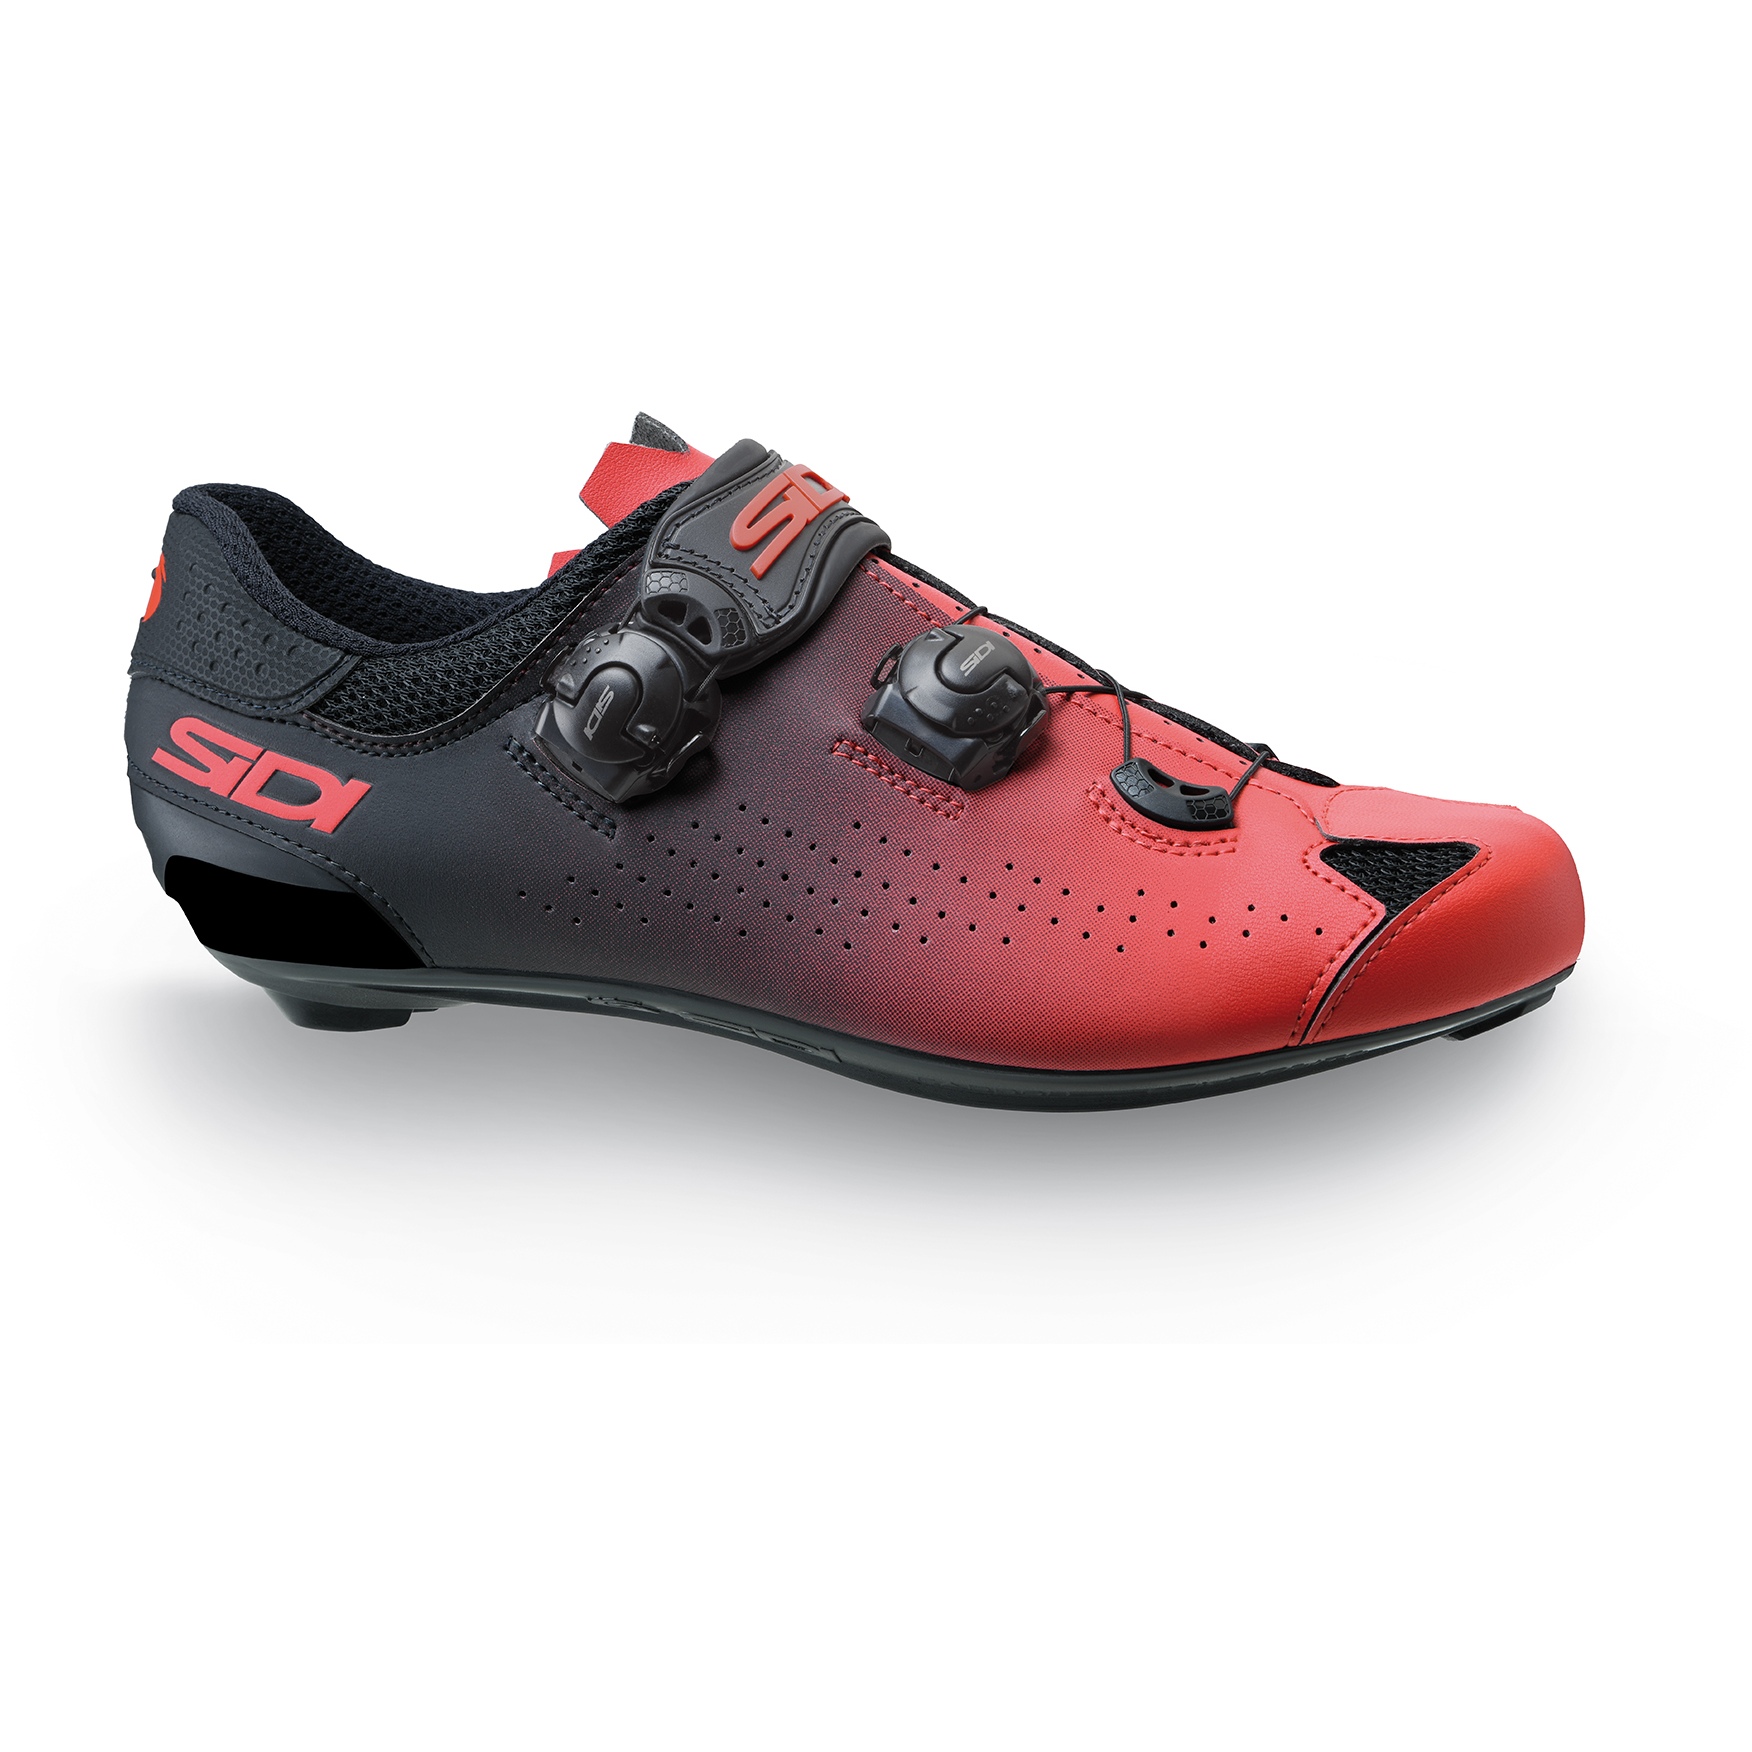 Produktbild von Sidi Genius 10 Rennradschuhe - Rot/Schwarz